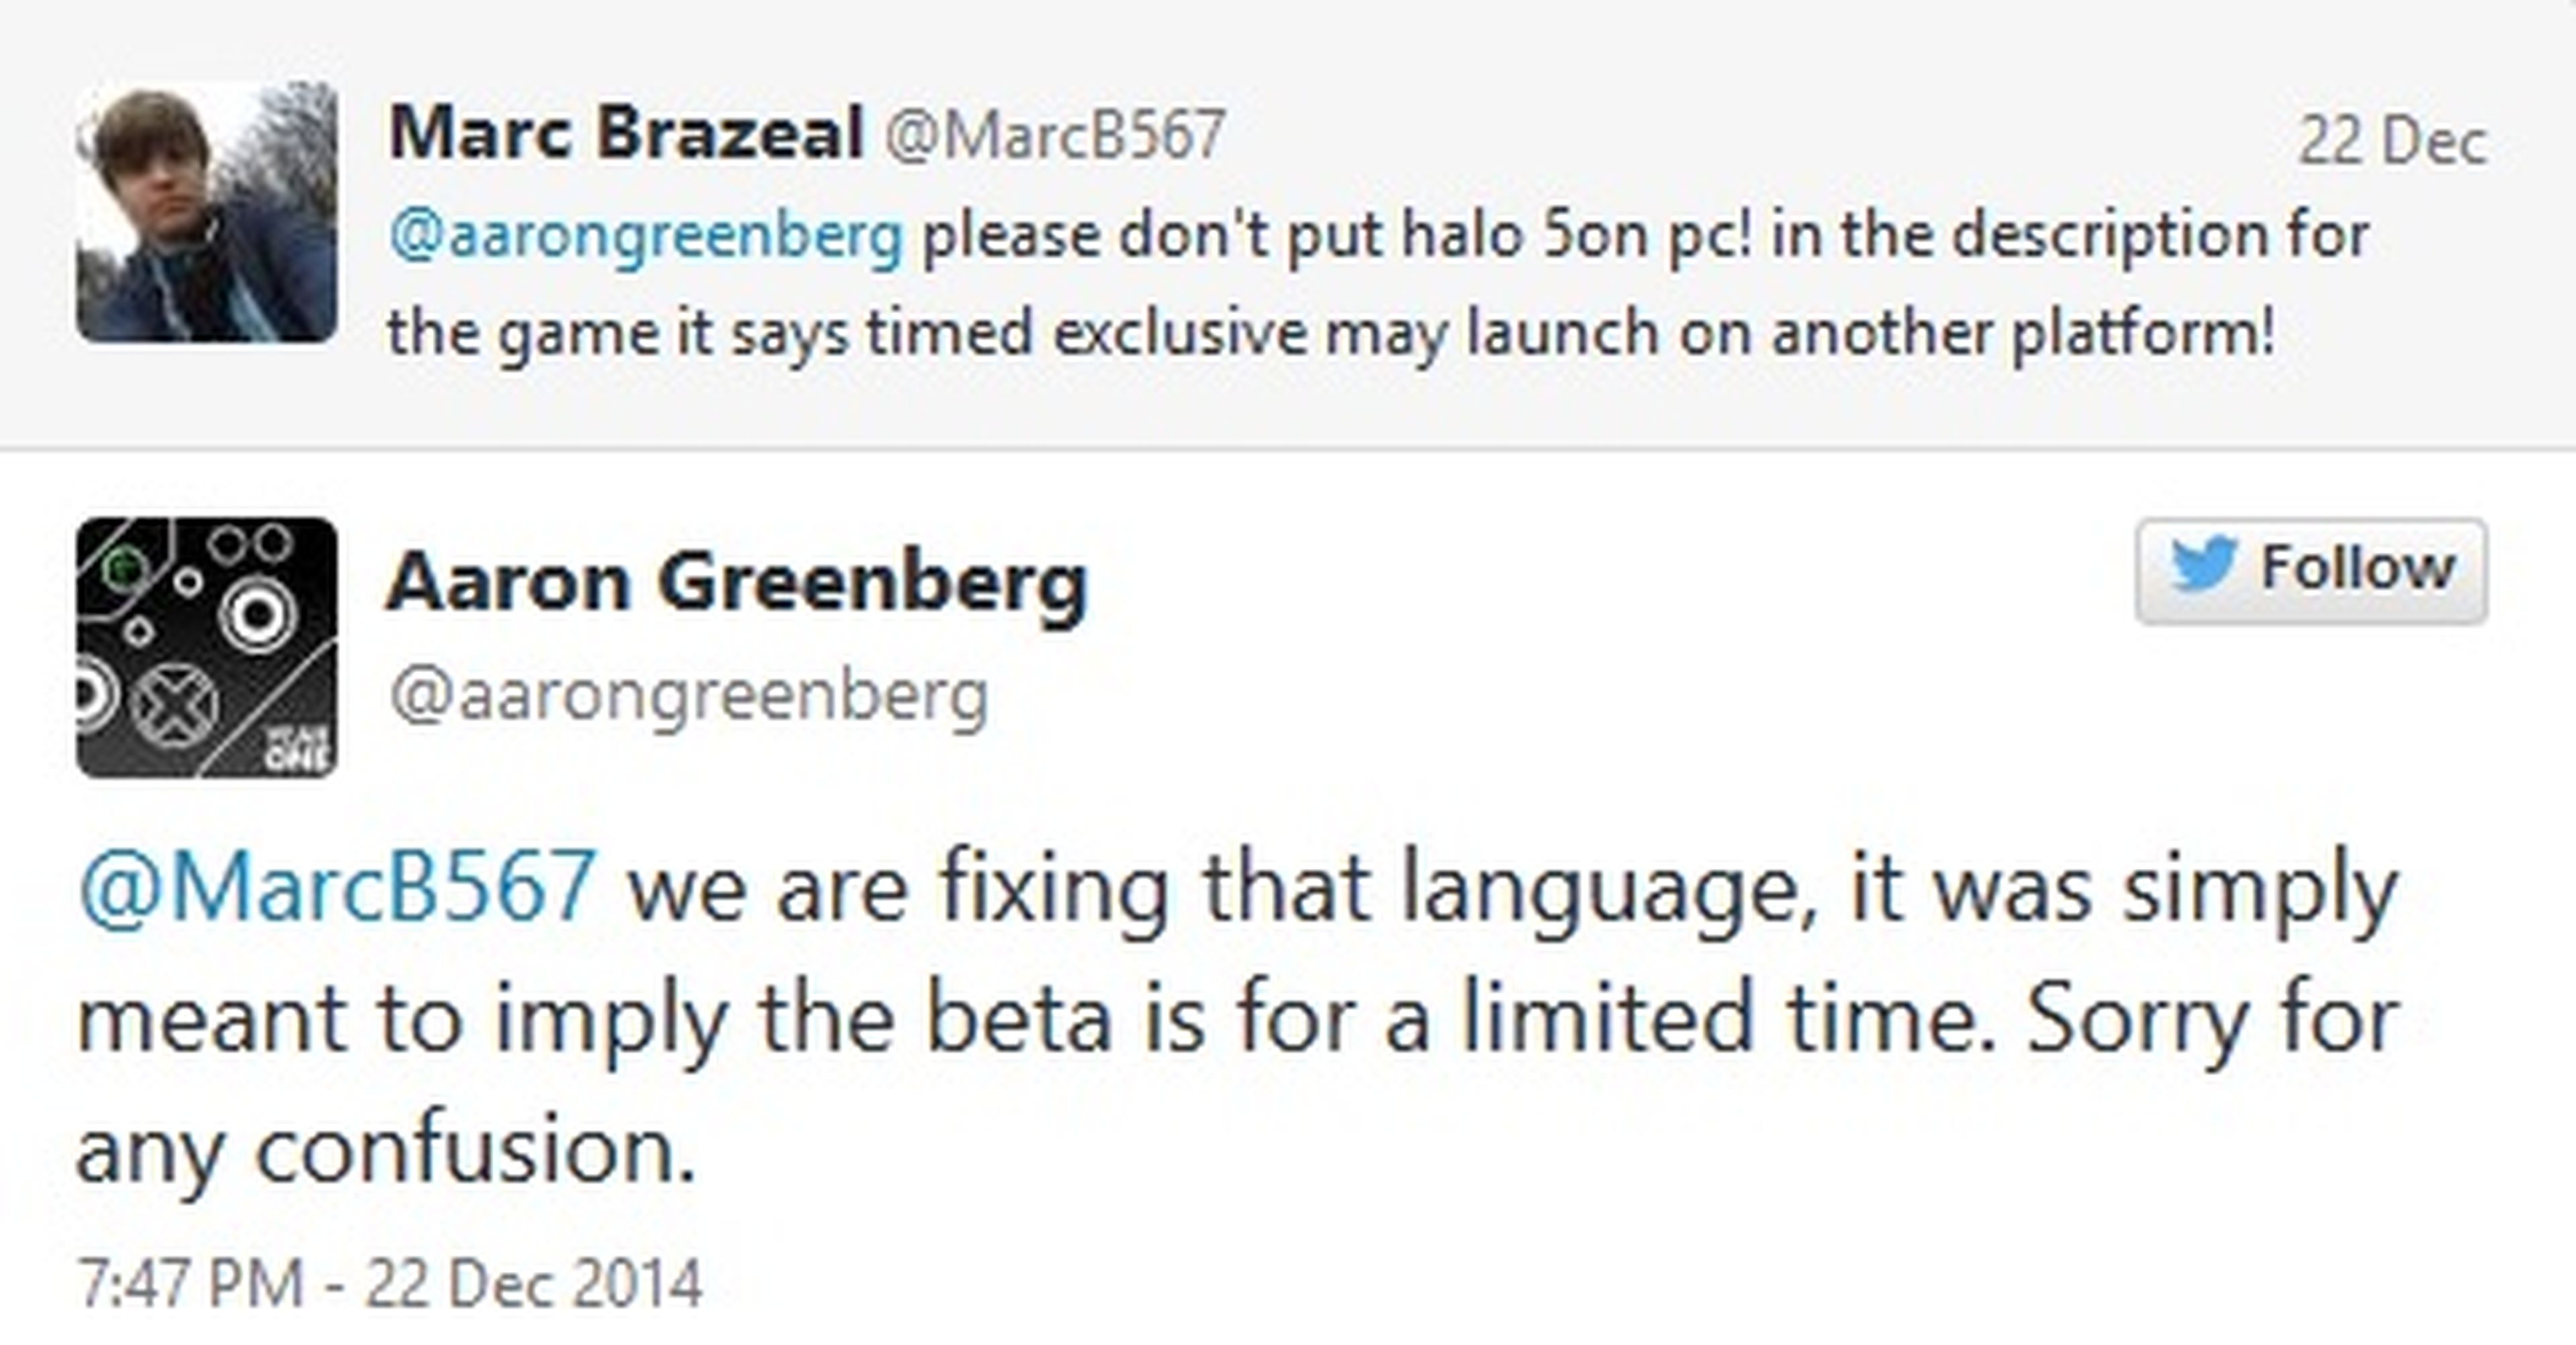 Halo 5: Guardians no llegará a PC